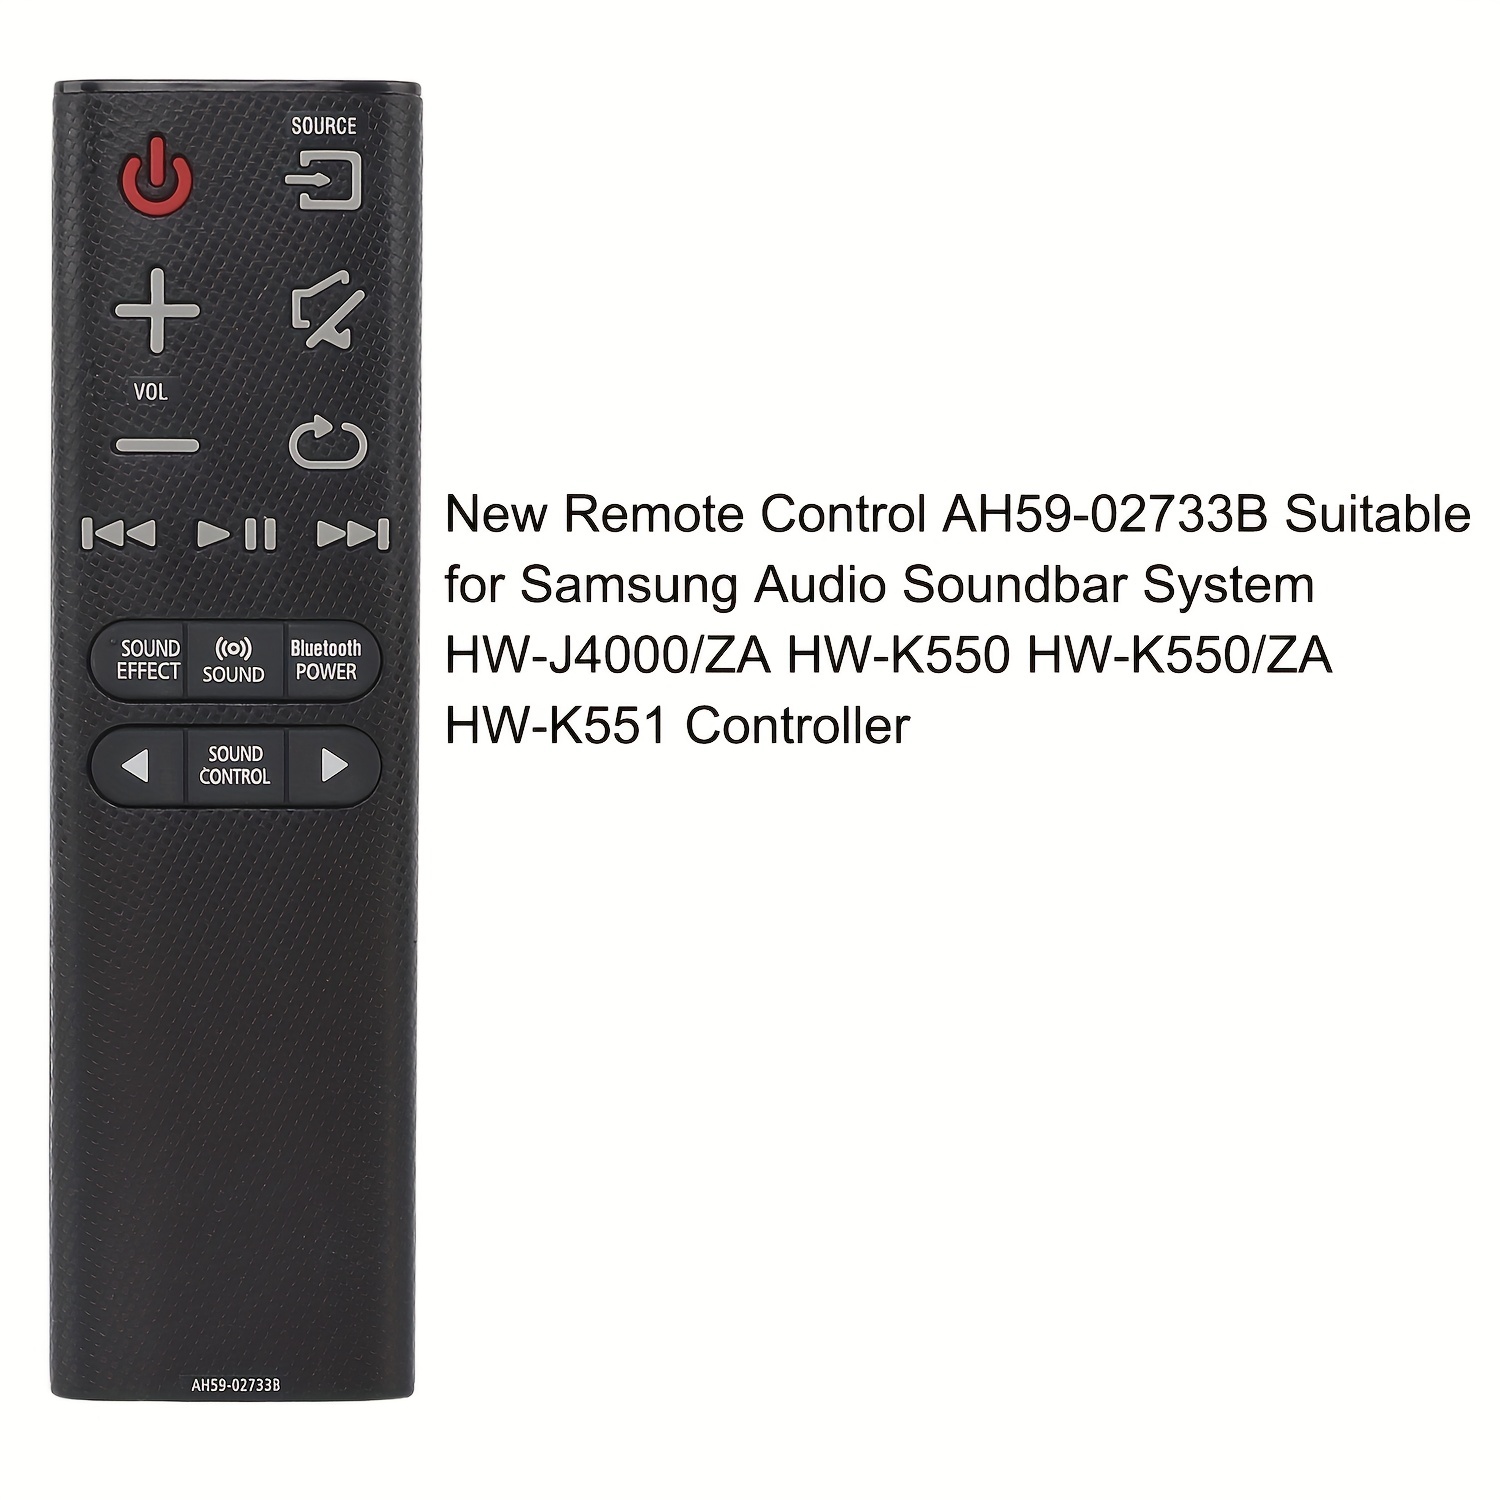 New AH59-02733B Remote Control - Perfectly Compatible with Samsung Soundbar  Models HW-K360, HW-KM36C, HW-KM36, HW-K450, HW-K550, HW-K551, HW-J4000, HW